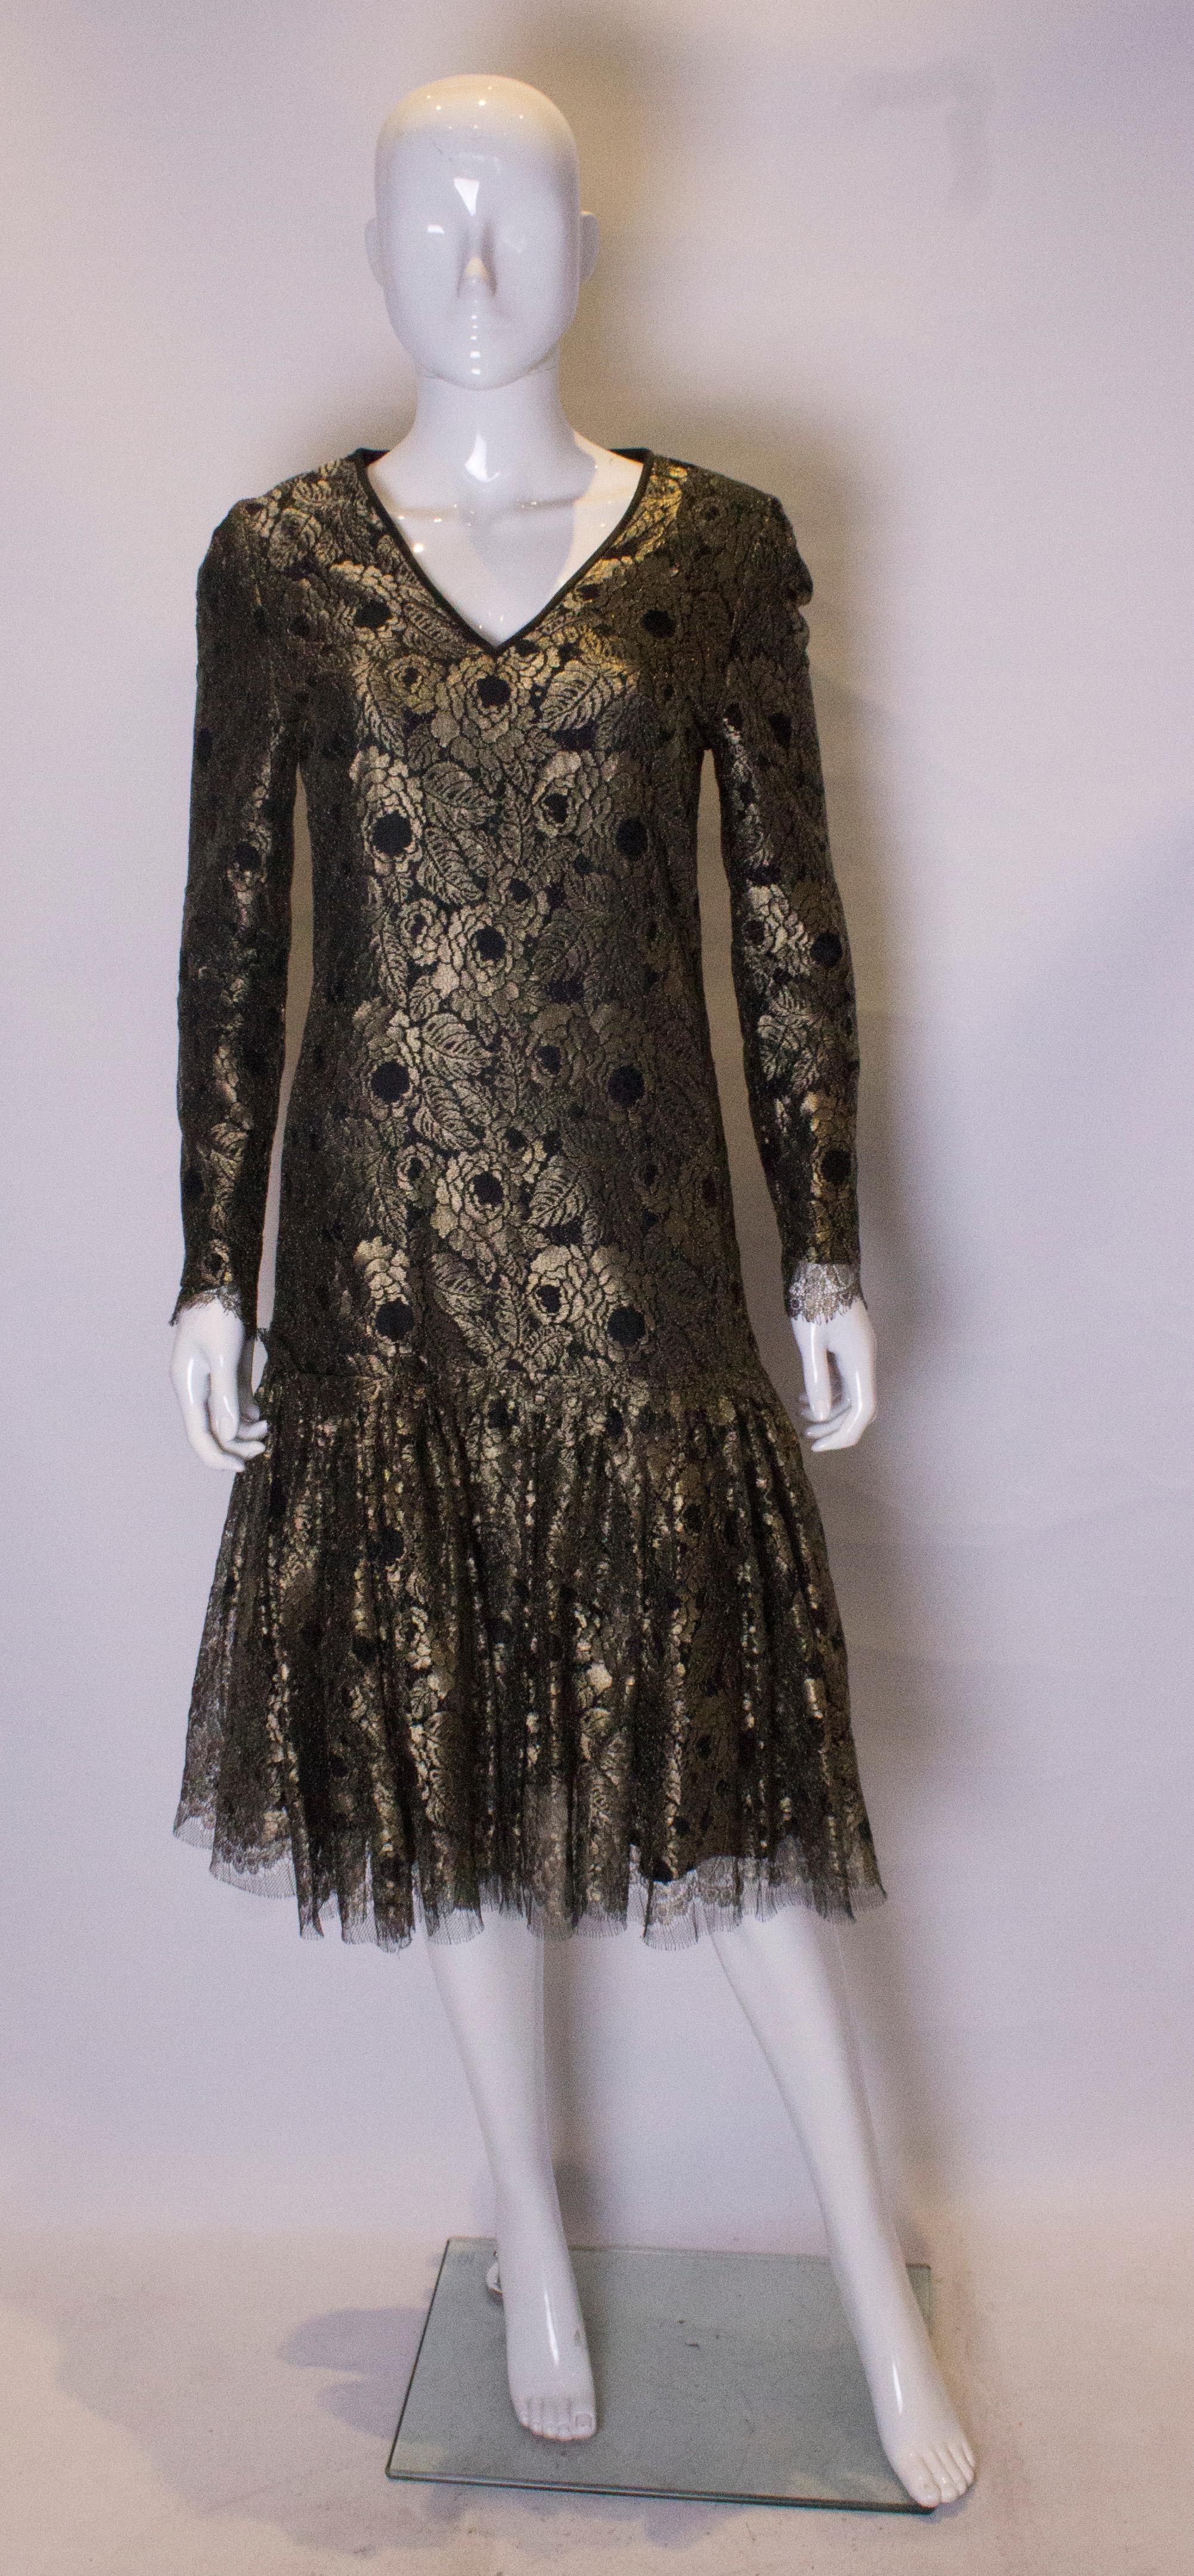 Das schicke Kleid von Caroline Charles ist aus goldener Spitze gefertigt und schwarz gefüttert. Es hat eine fallende Taille mit einer Rüsche am Saum und einen zentralen Reißverschluss am Rücken.